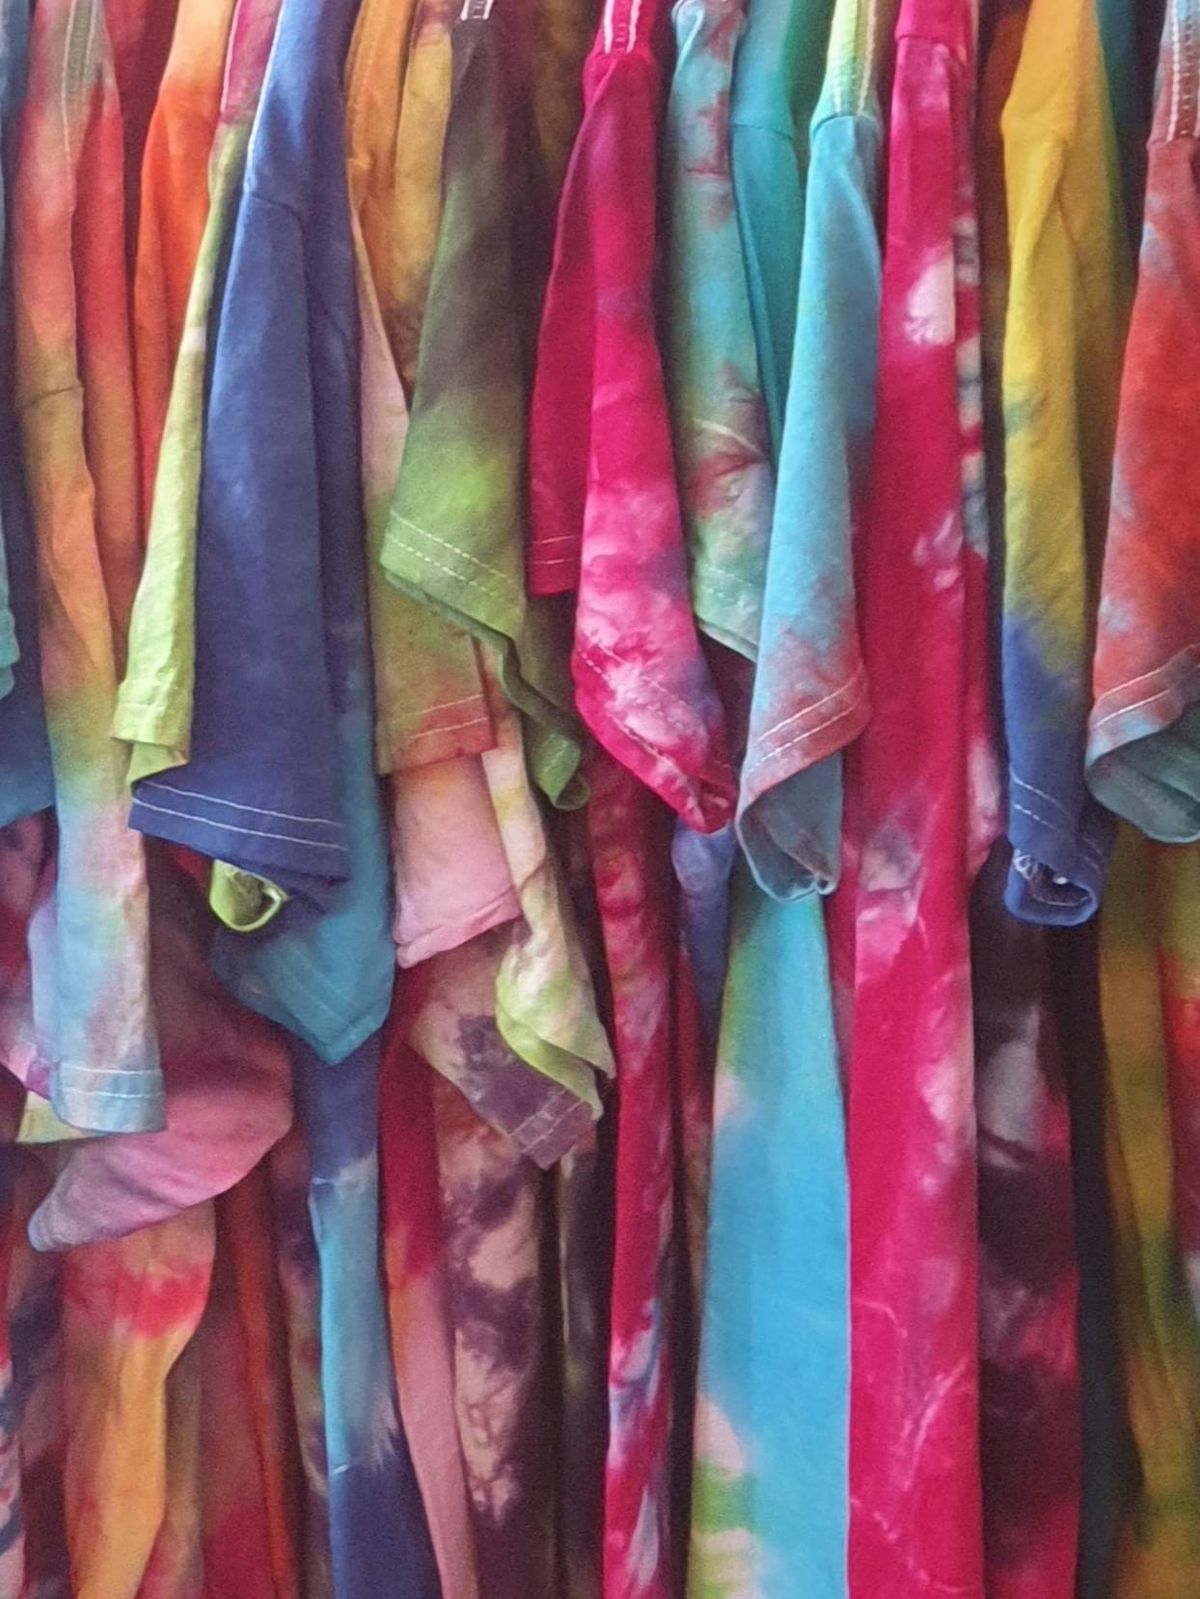 The Tie Dye Emporium at Lairg Gala Week at Ferrycroft